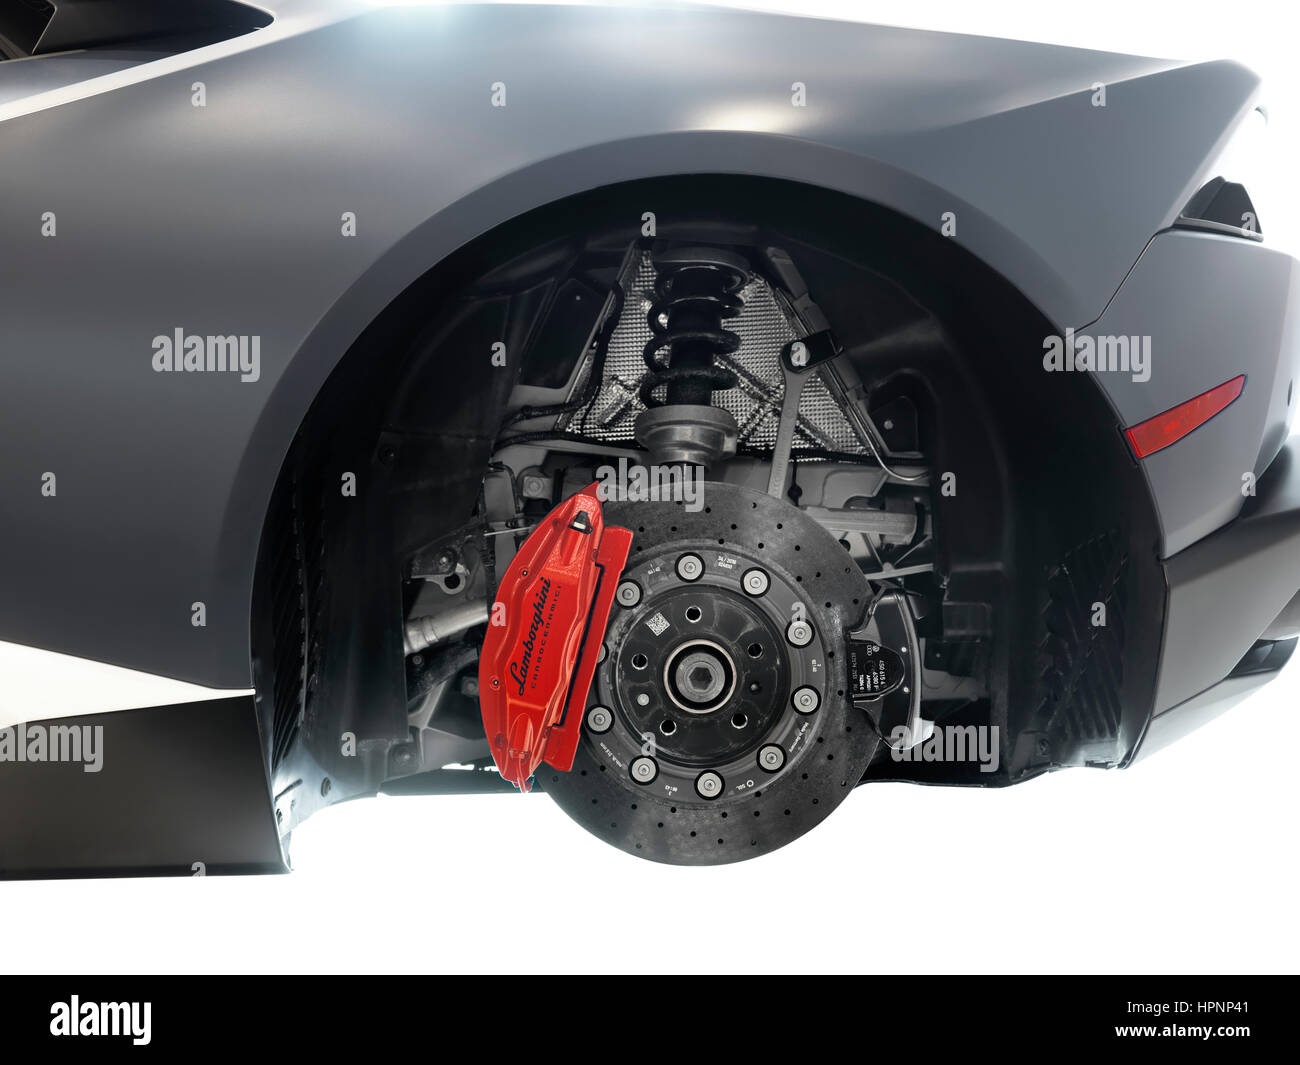 Nahaufnahme von Lamborghini Sportwagen Leistung-Keramik-Bremsen, eine  Scheibe und einem Bremssattel Stockfotografie - Alamy